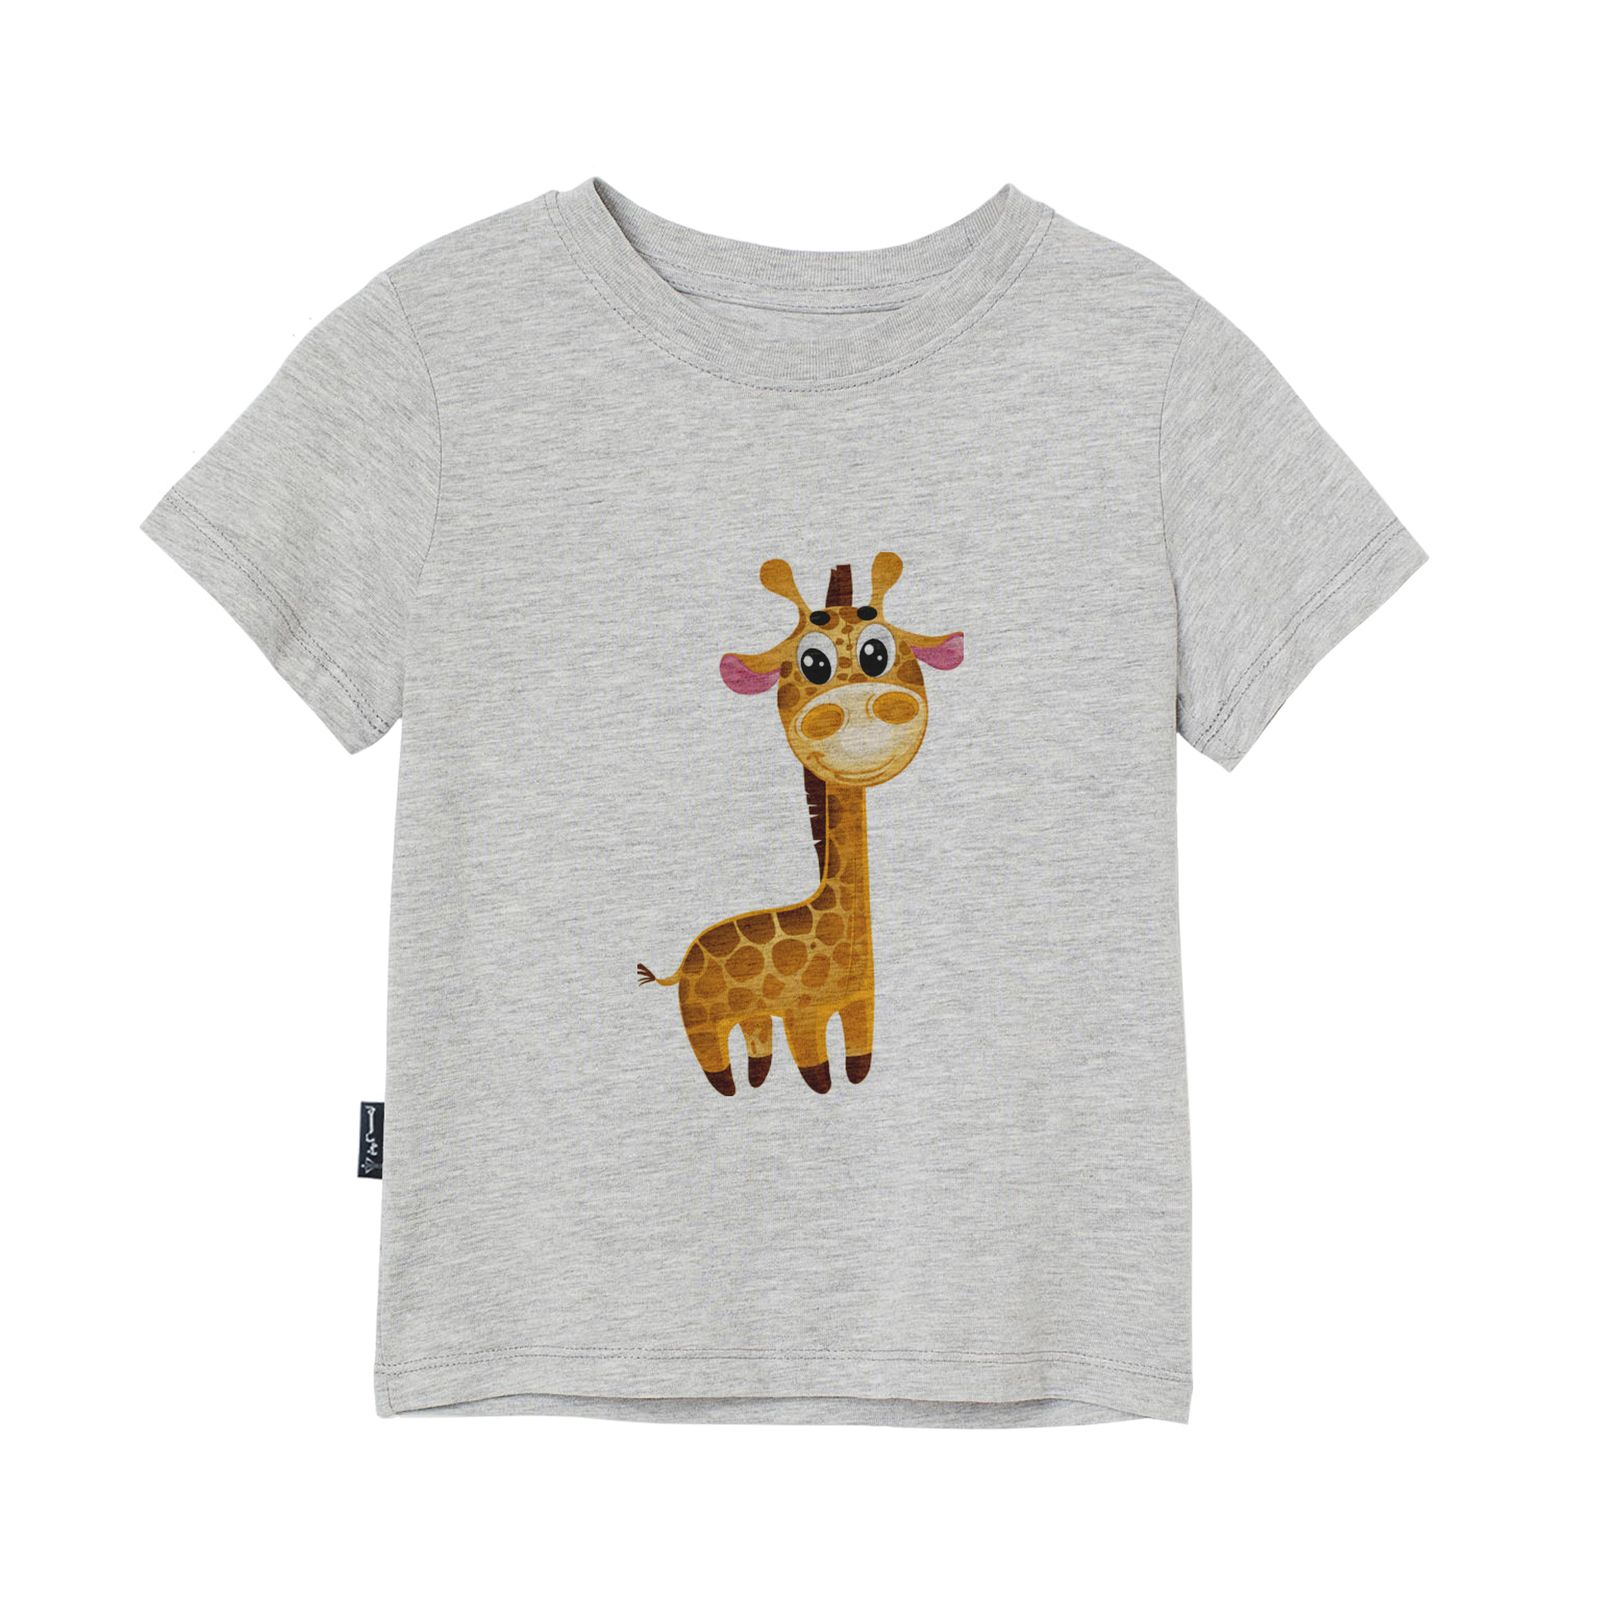 تی شرت آستین کوتاه دخترانه به رسم مدل زرافه کد 1109 -  - 3